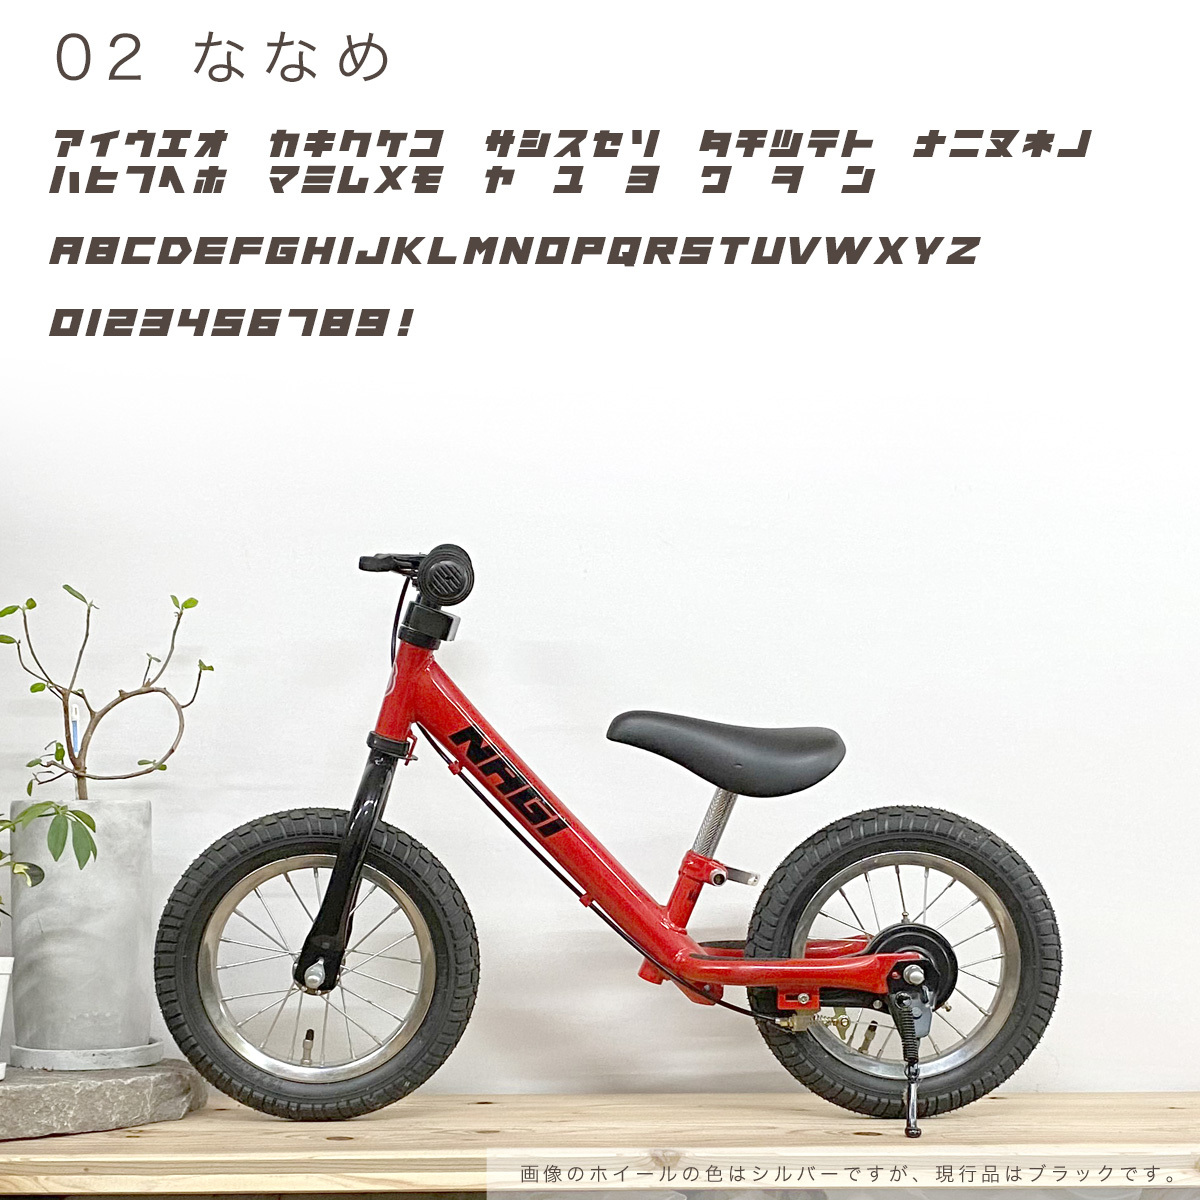 [ кузов . в то же время . покупка пожалуйста ] название inserting Logo часть. custom Kids мотоцикл SPARKY в дальнейшем покупка . если Sparky 